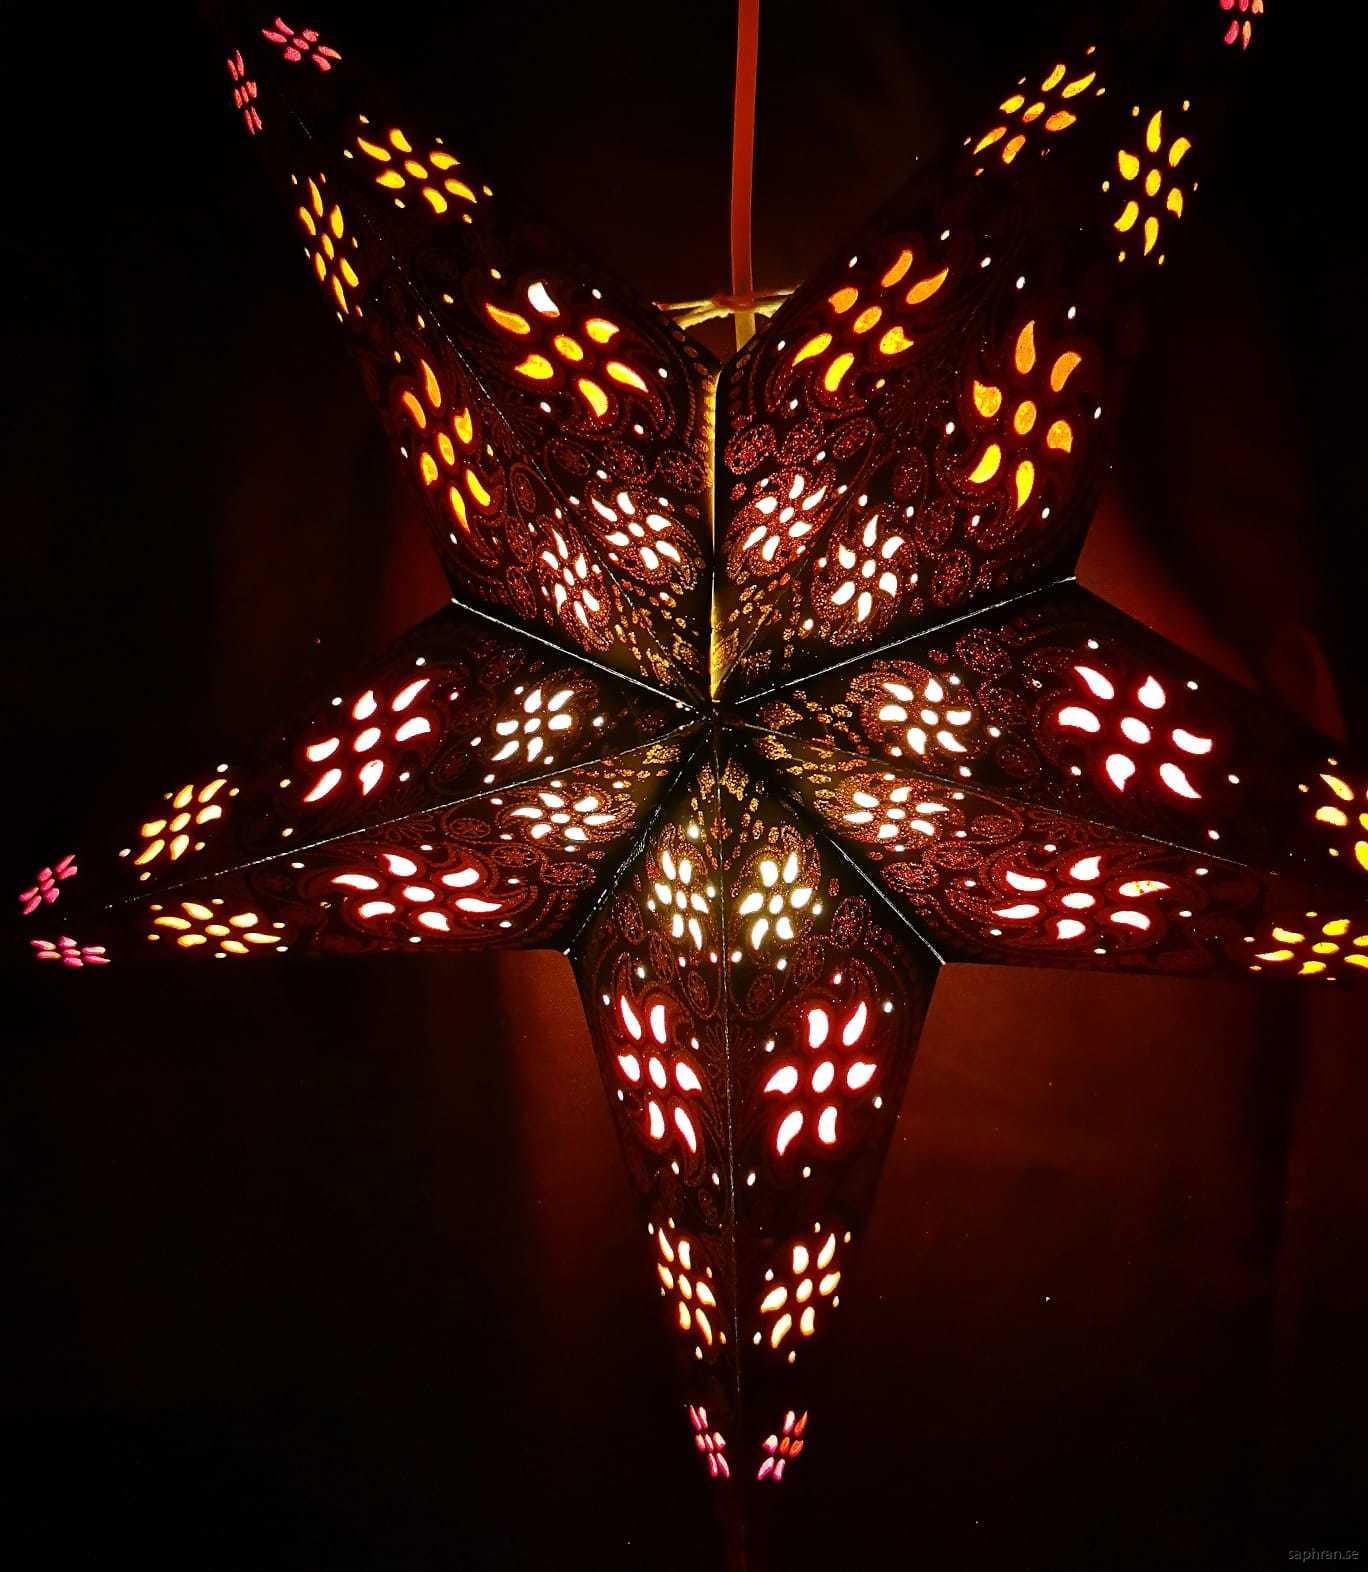 Svart, orientalisk julstjärna med varm, mysigt sken.